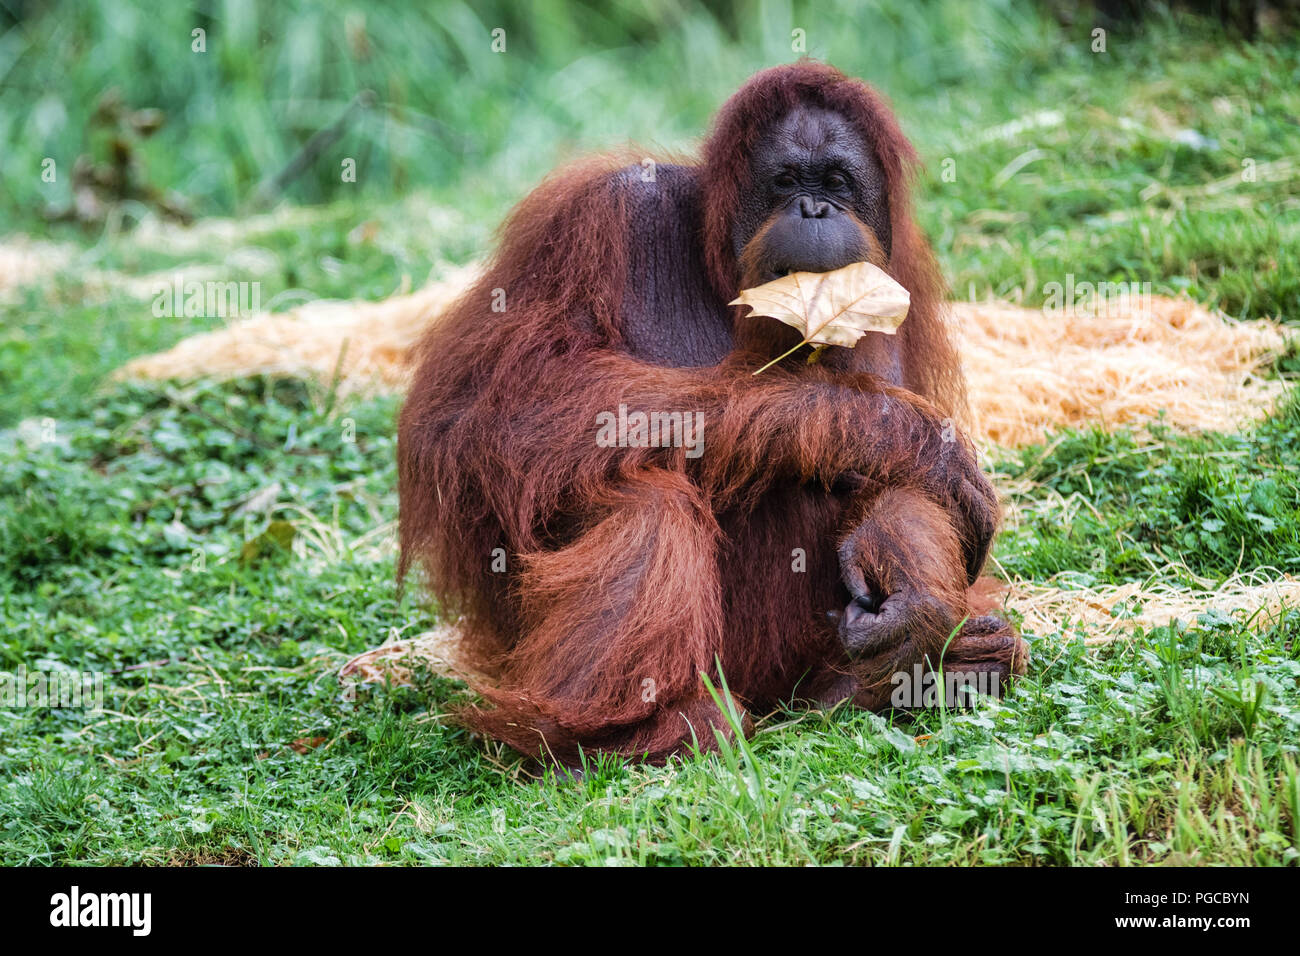 L'orang-outan est le plus gros mammifère arboricole, le seul des grands singes à passer sa vie entière dans les arbres. Foto Stock